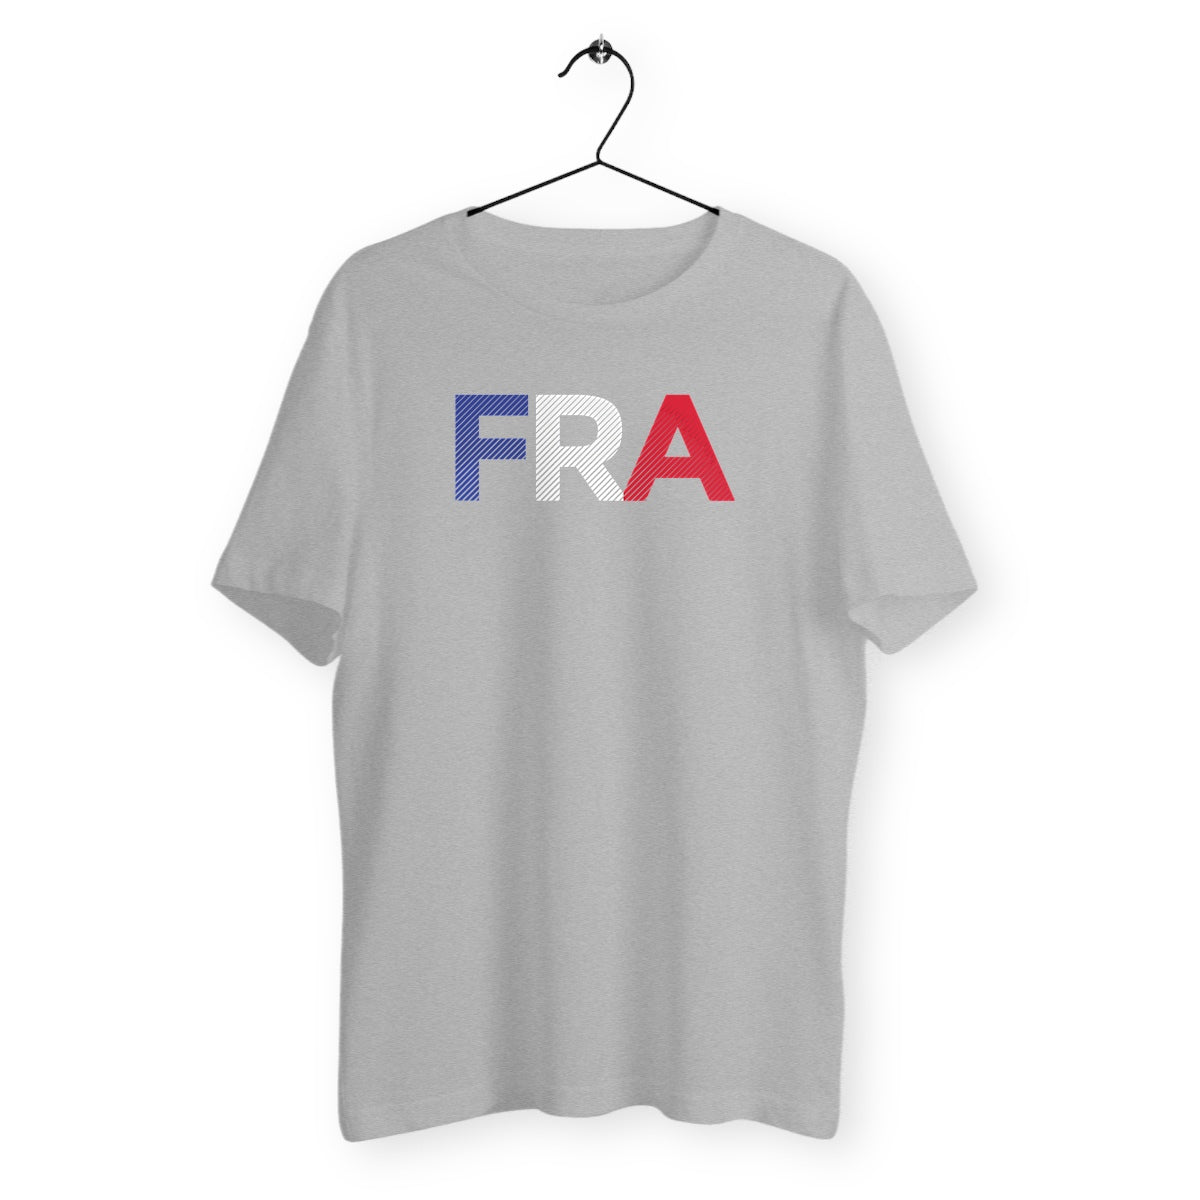 T-Shirt Mixte Bio - France Initiales (poitrine), t-shirt mixte France, t-shirt supporter équipe de France, t-shirt France, t-shirt homme France, t-shirt femme France, t-shirt football, t-shirt UEFA Euro 2020, t-shirt Euro France, t-shirt fan de football, t-shirt de foot, t-shirt fan de l'équipe de France, impression poitrine, t-shirt match de foot, t-shirt gris